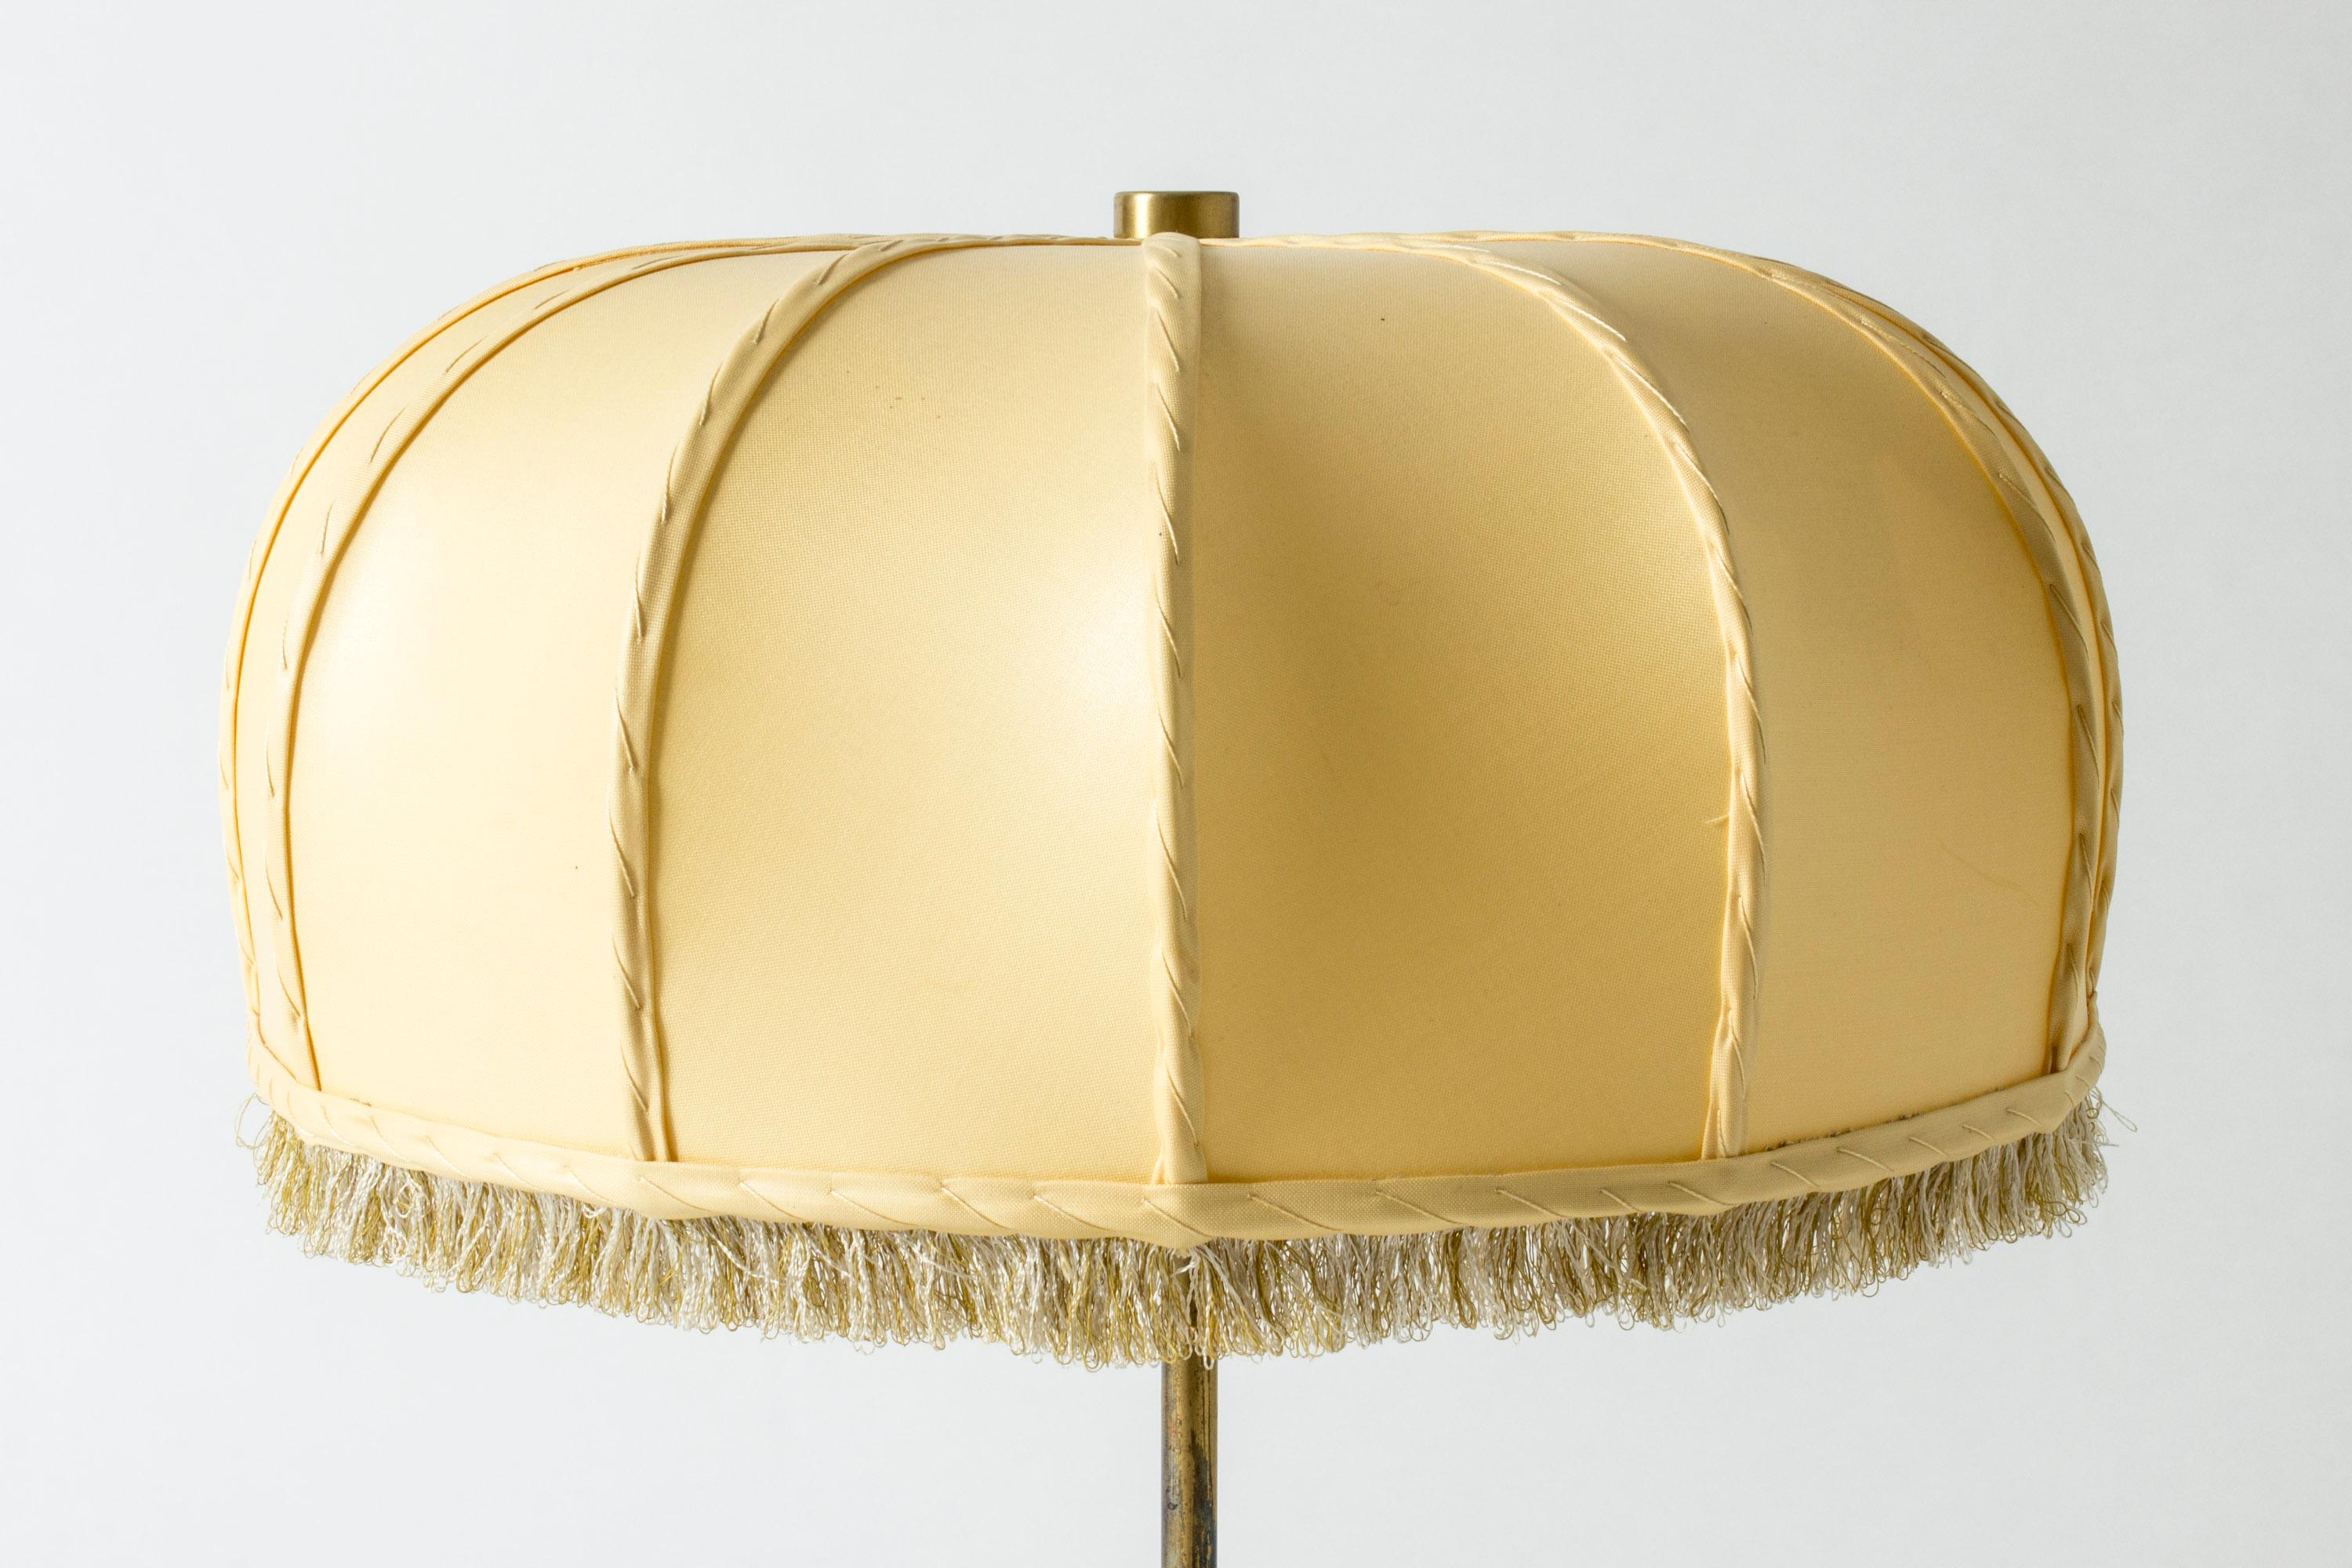 Scandinavian Modern Table Lamp #2466 Designed by Josef Frank for Svenskt Tenn, Sweden